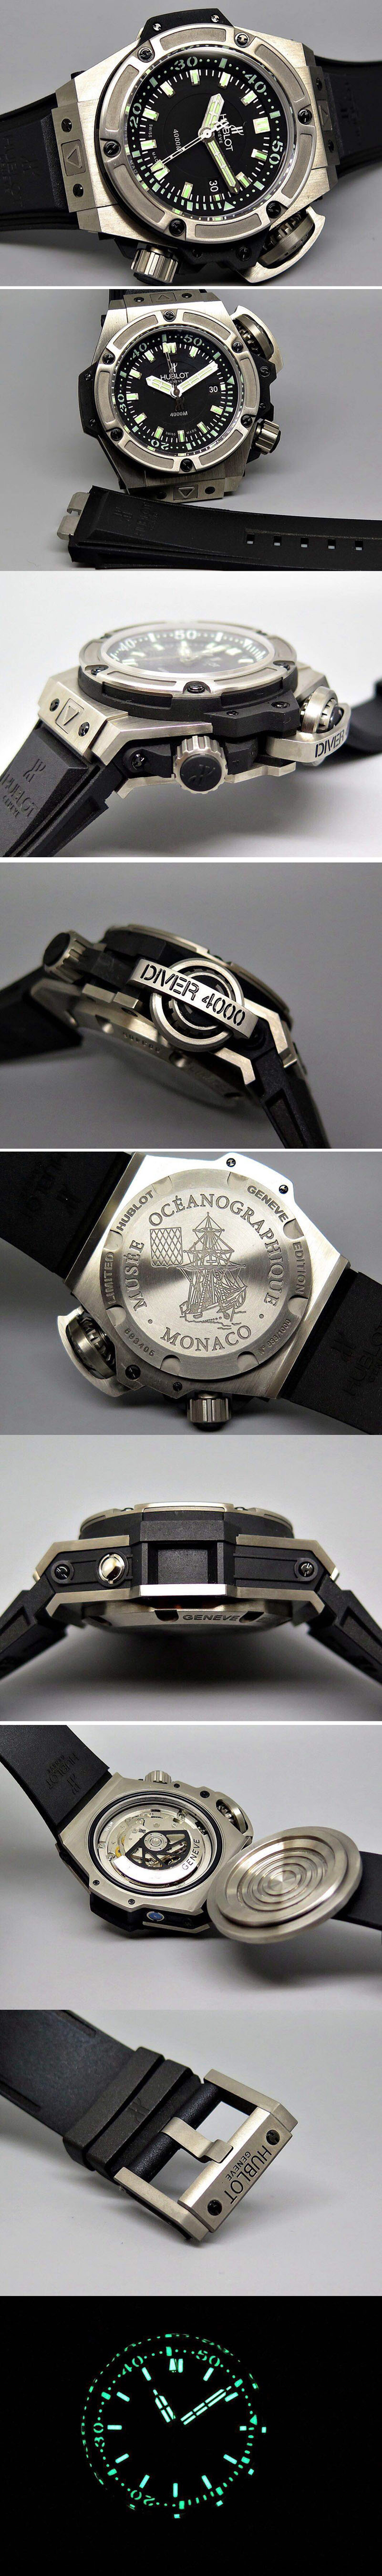 Hublot 731.NX.1190.RX Diver 4000m TI/Rubber Black A-7750 Replica Watches